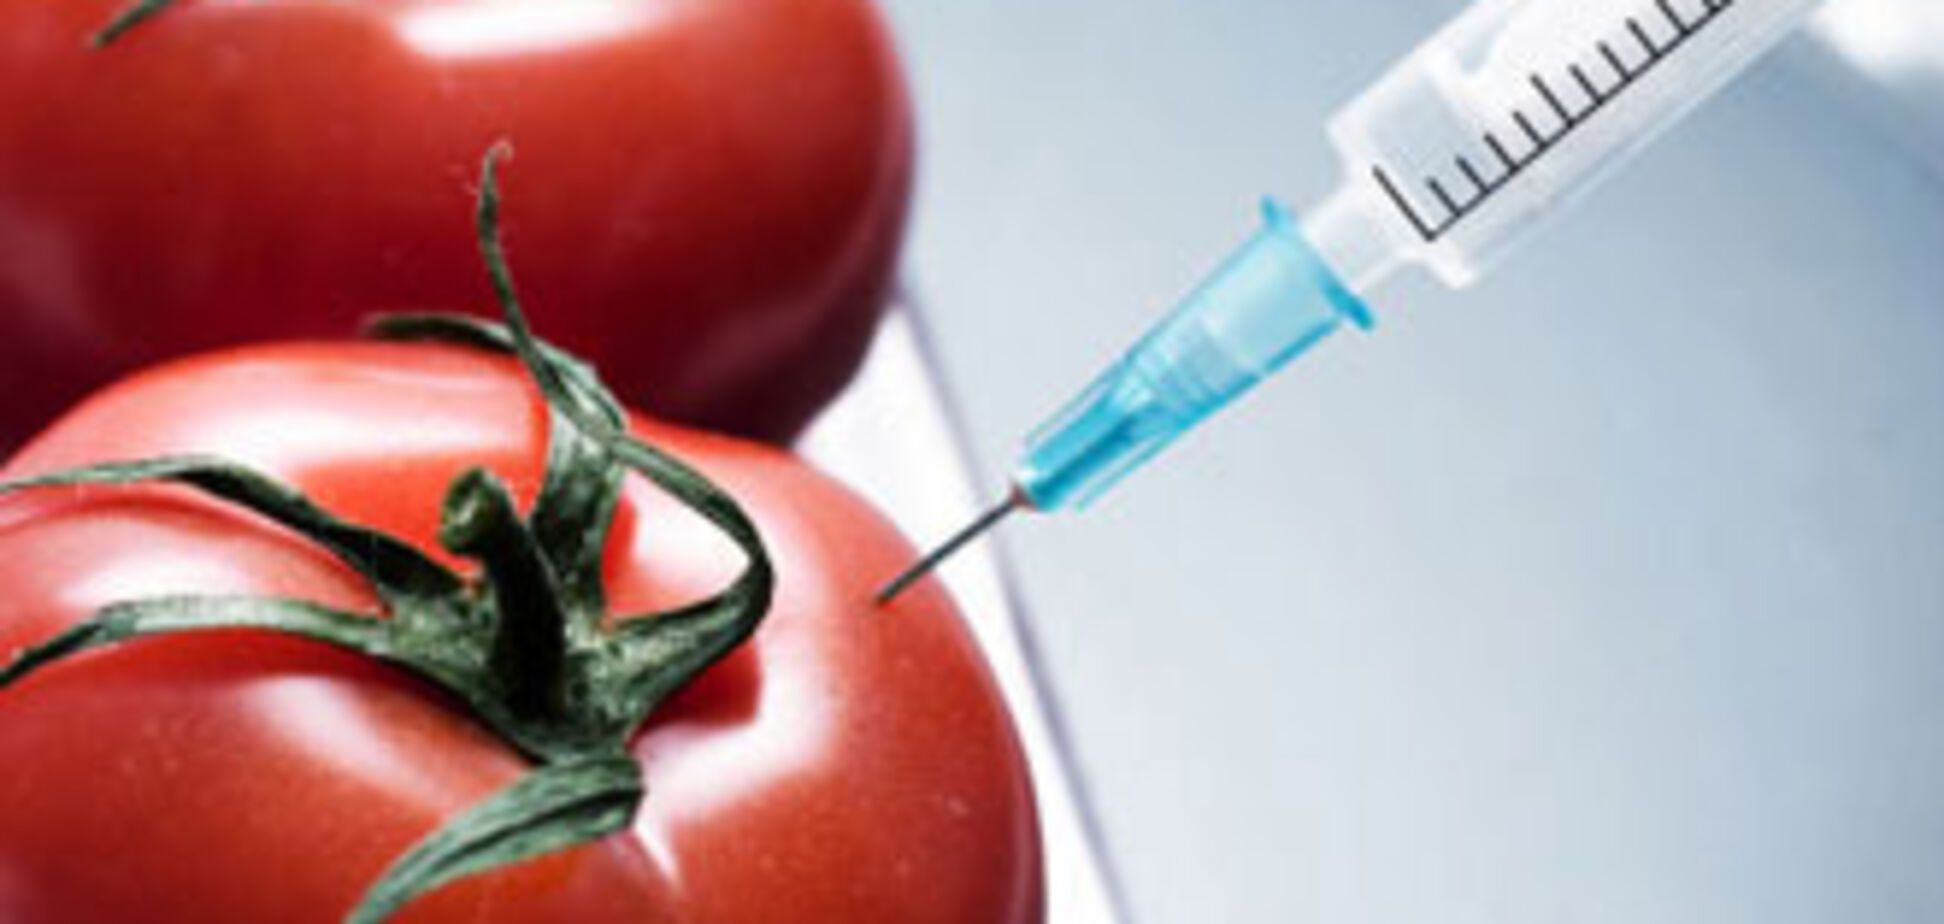 Кабмин позволил вдевятеро больше ГМО в продуктах